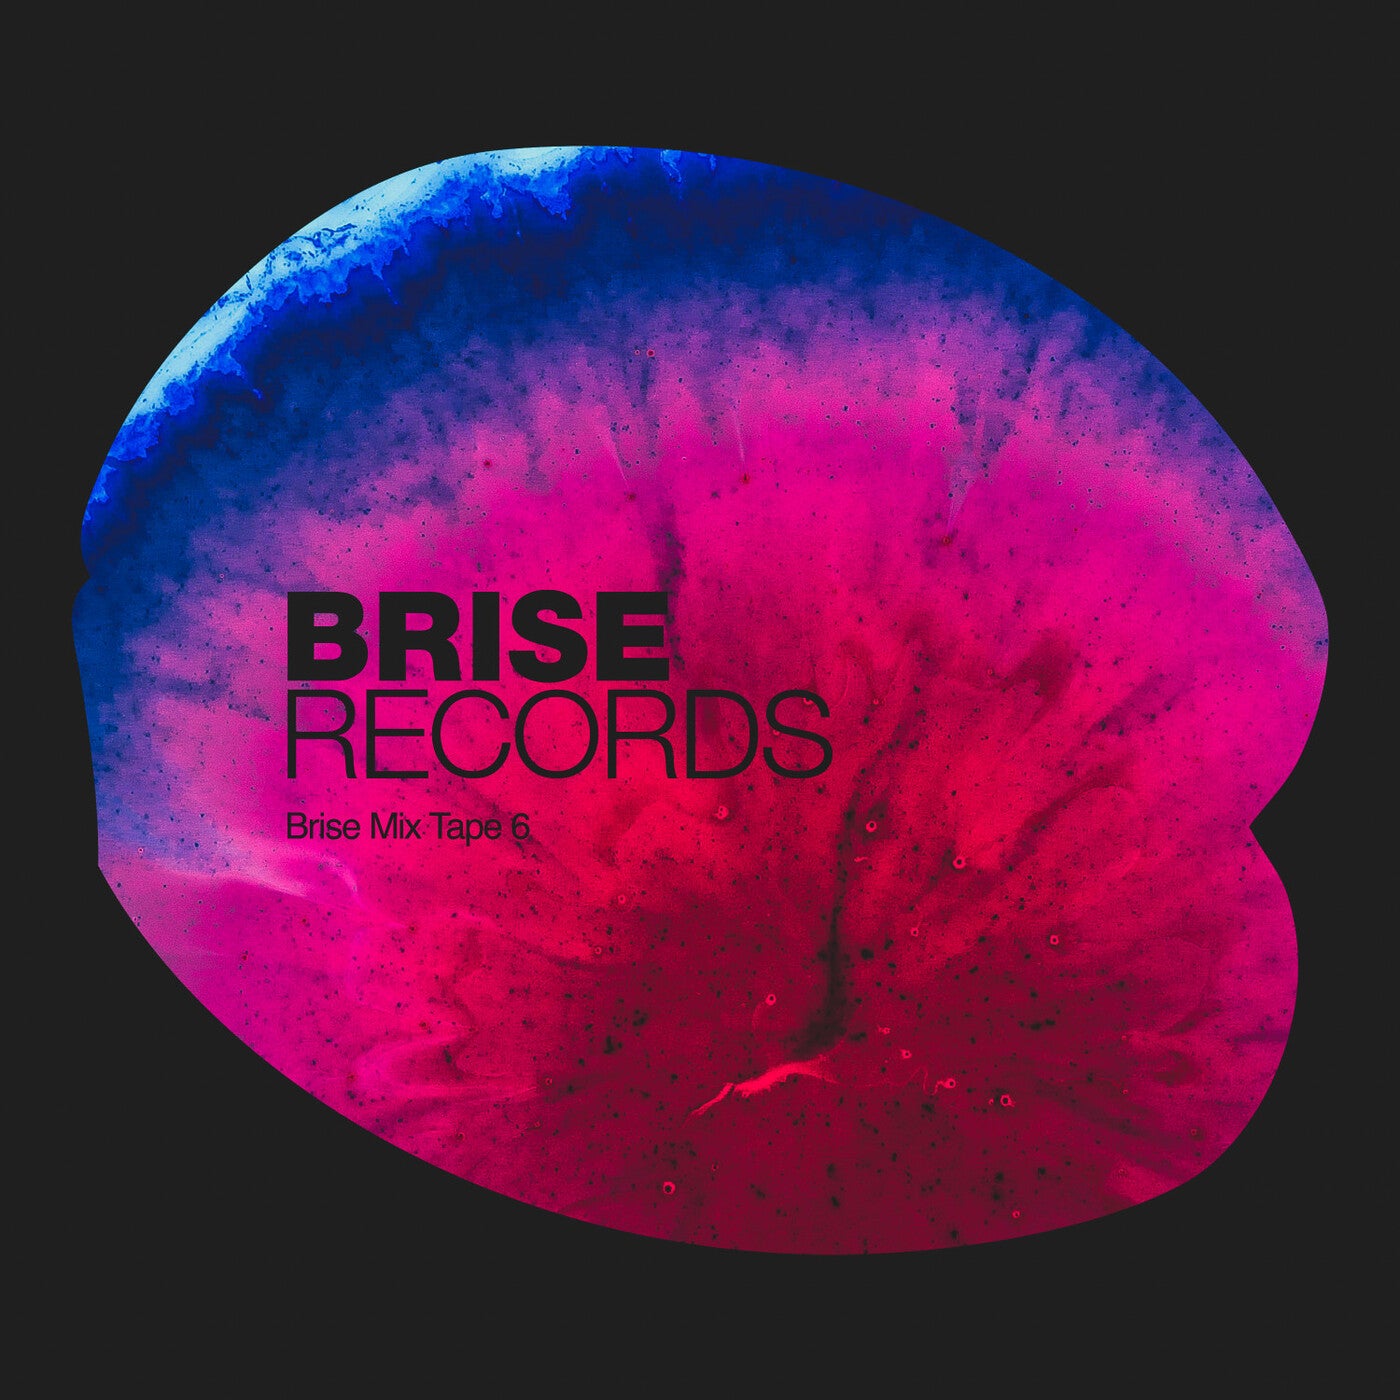 VA – Brise Mix Tape 6